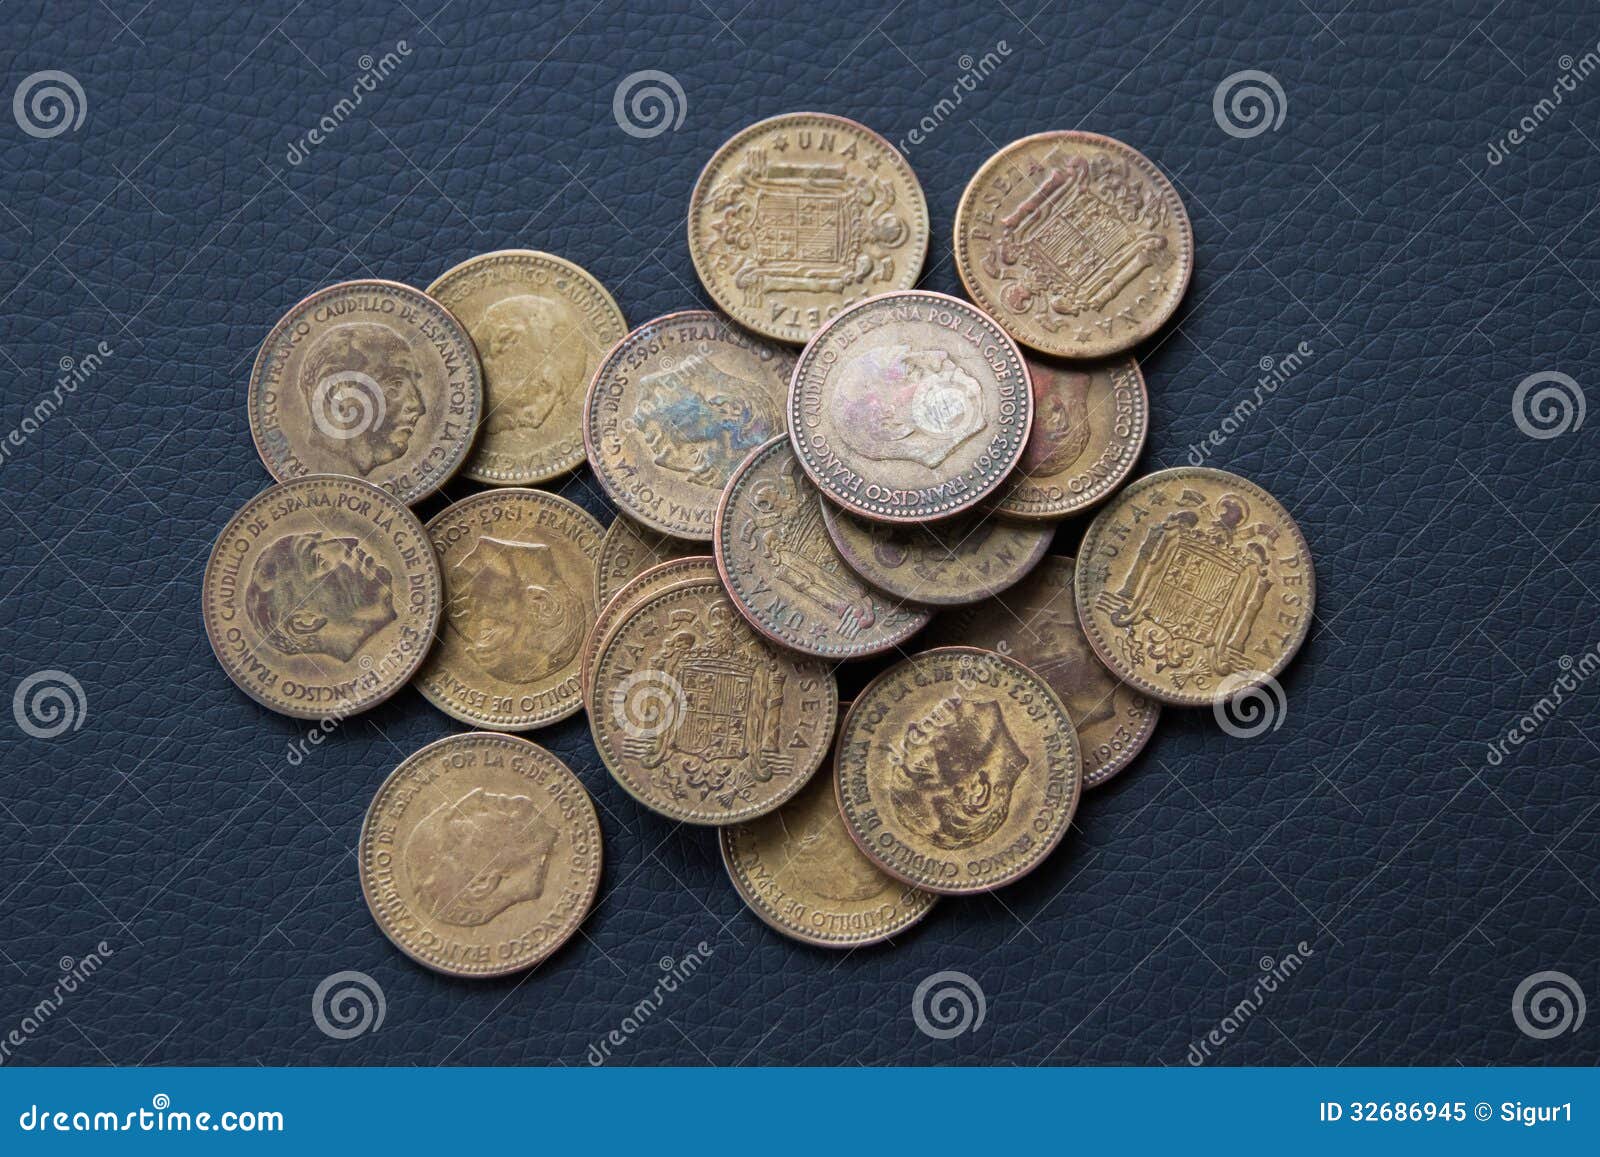 peseta coins ancient spain